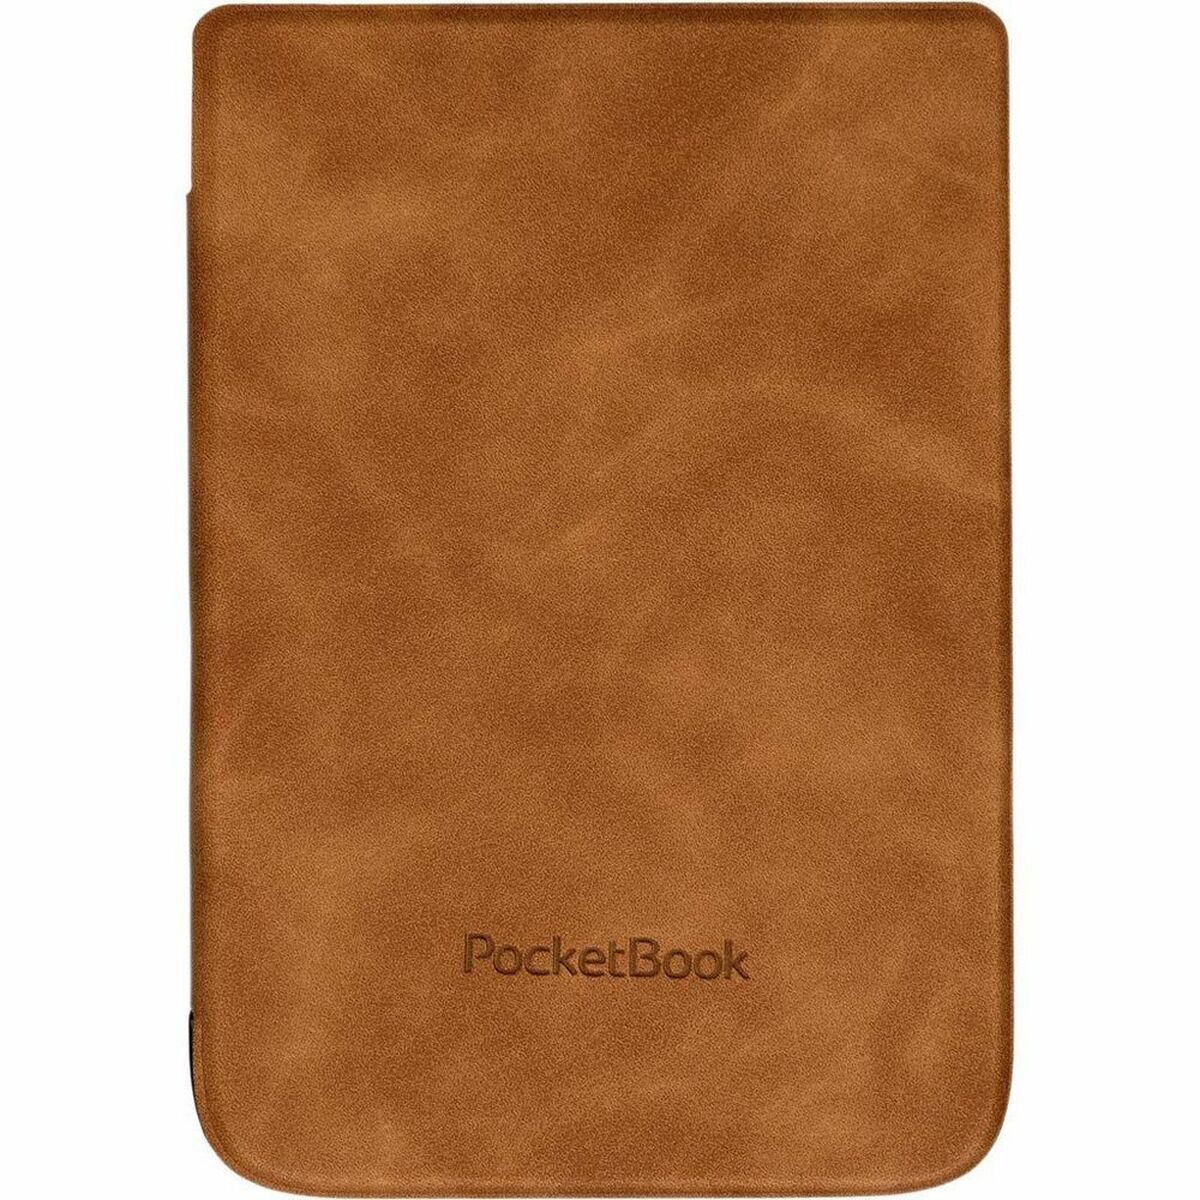 Pocketbook - 